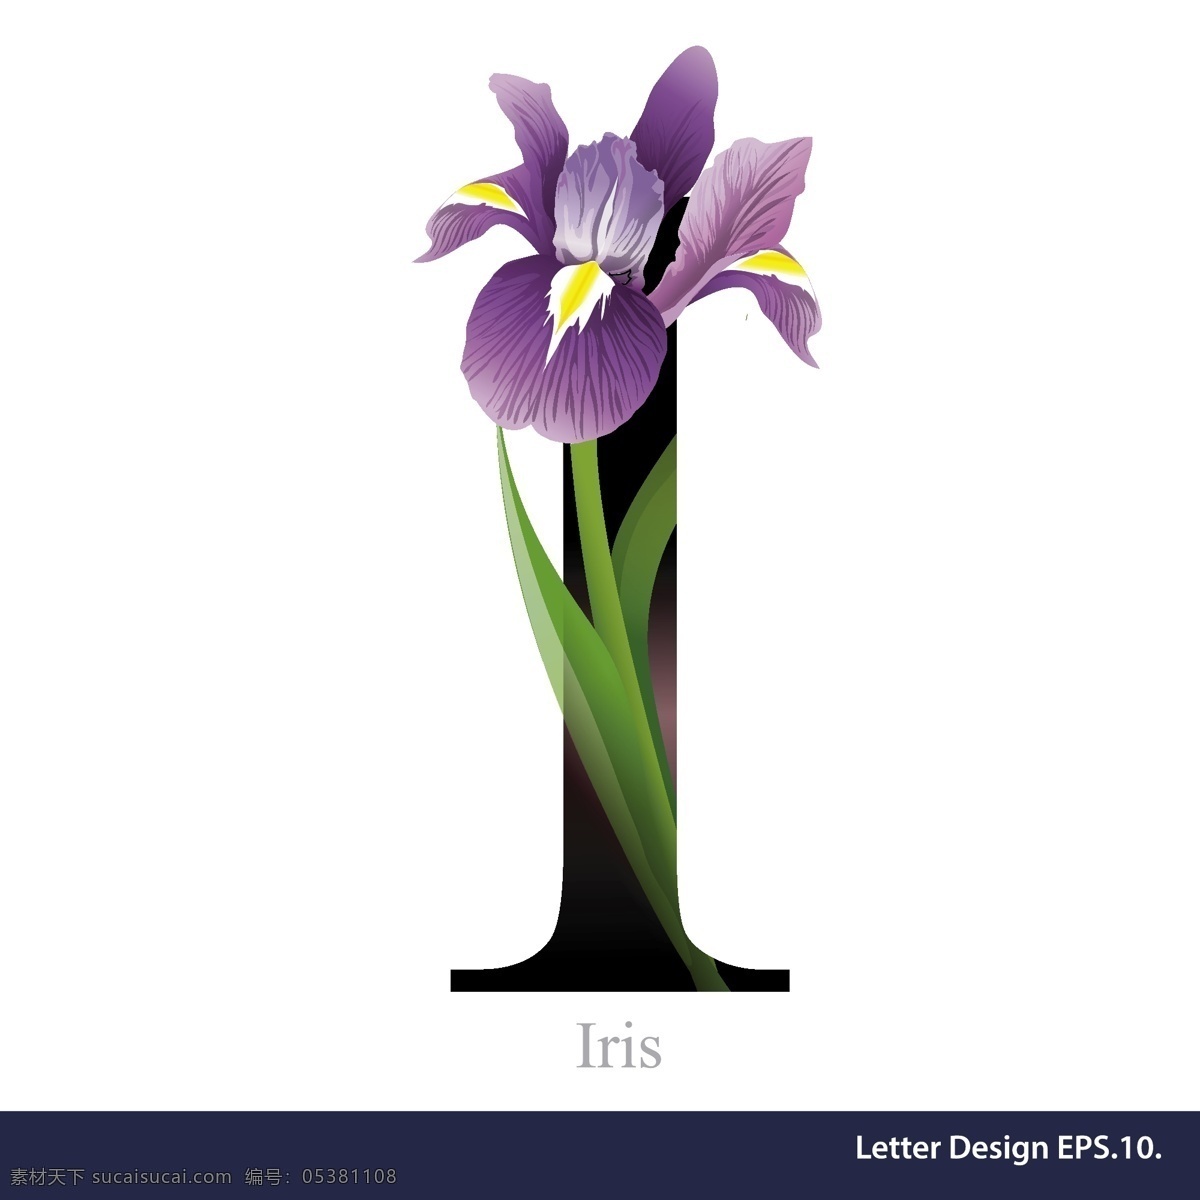 热带 紫色 花卉 英文 字母 字体 大写 数字 矢量 源文件